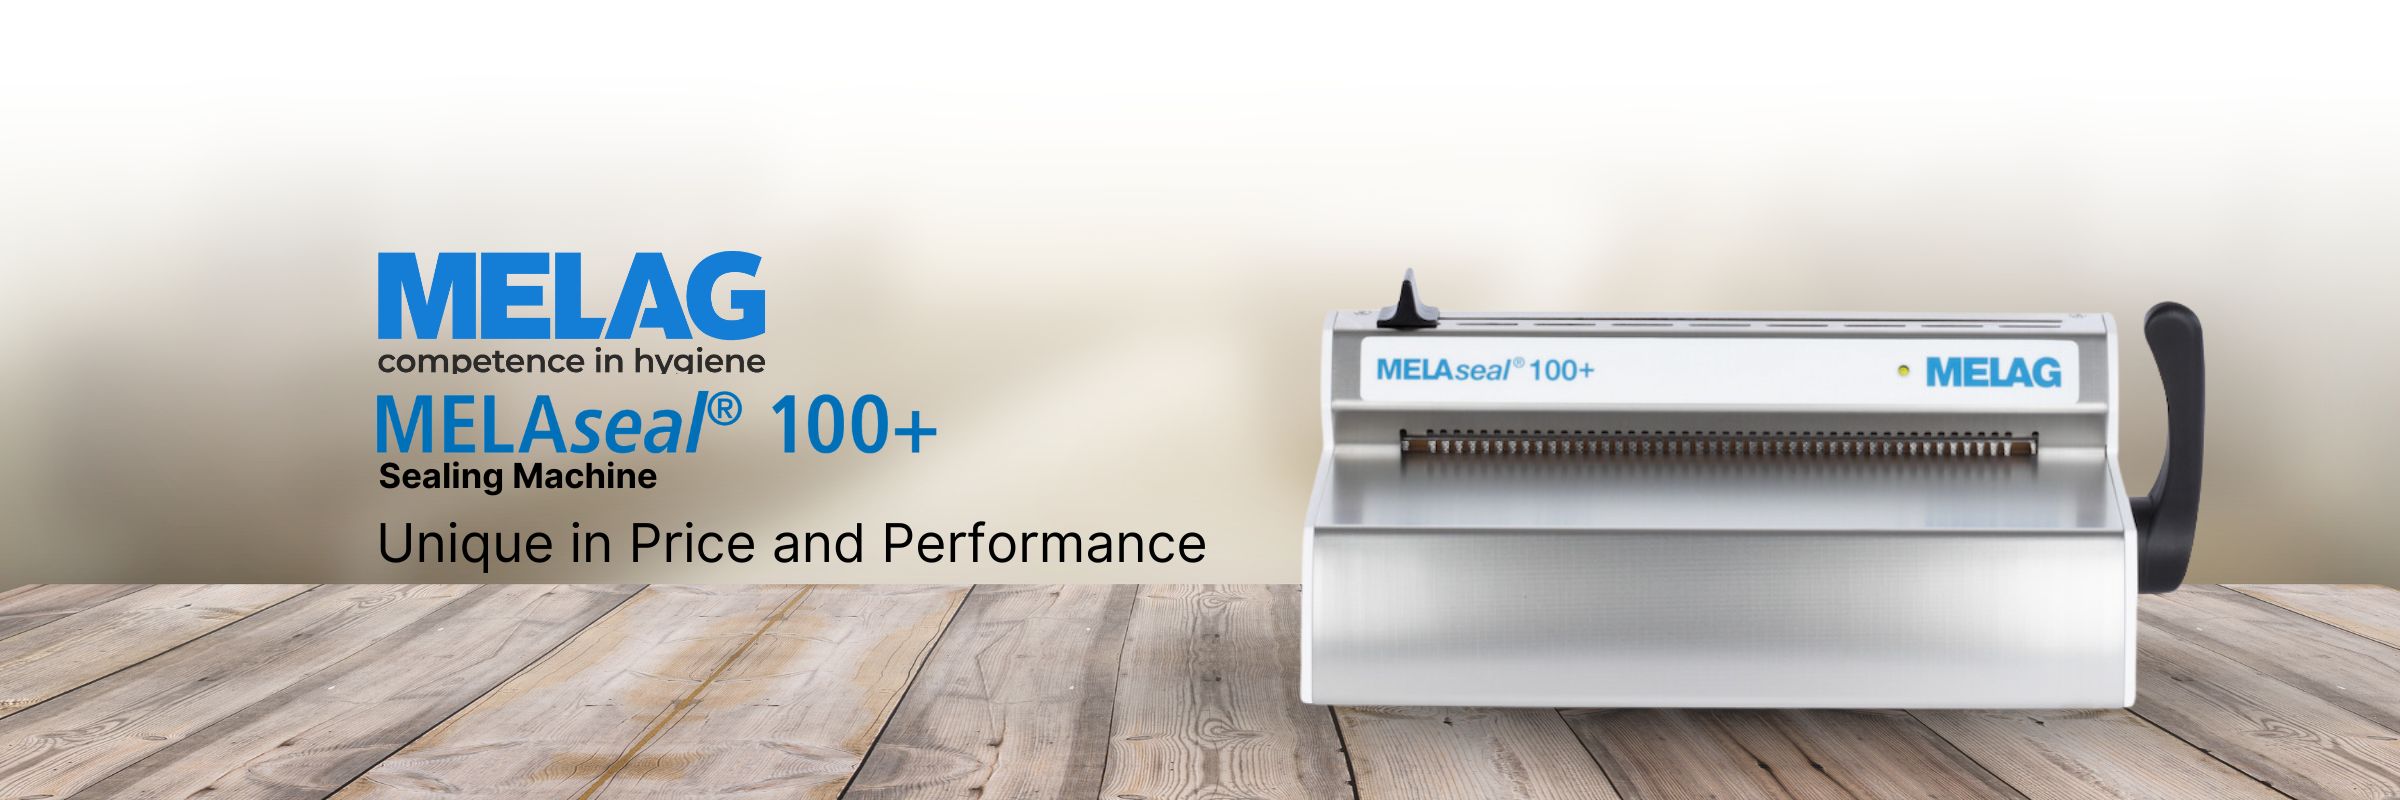 Melag MELASeal 100+ Banner